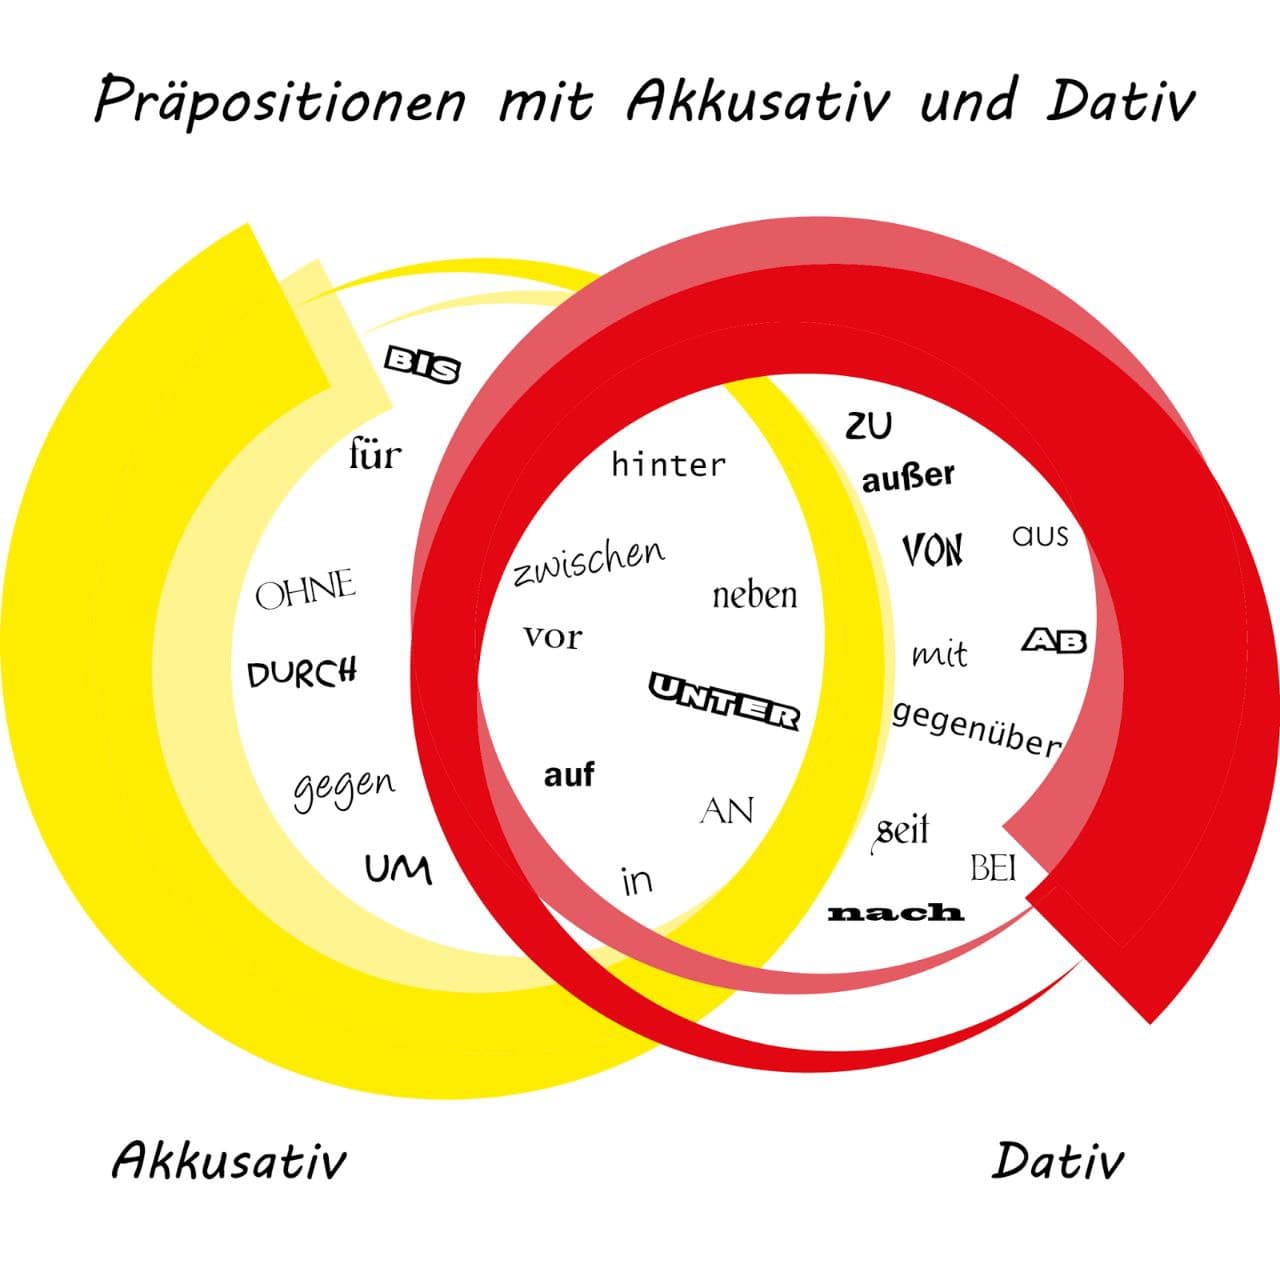 داتیو و آکوزاتیو در آلمانی